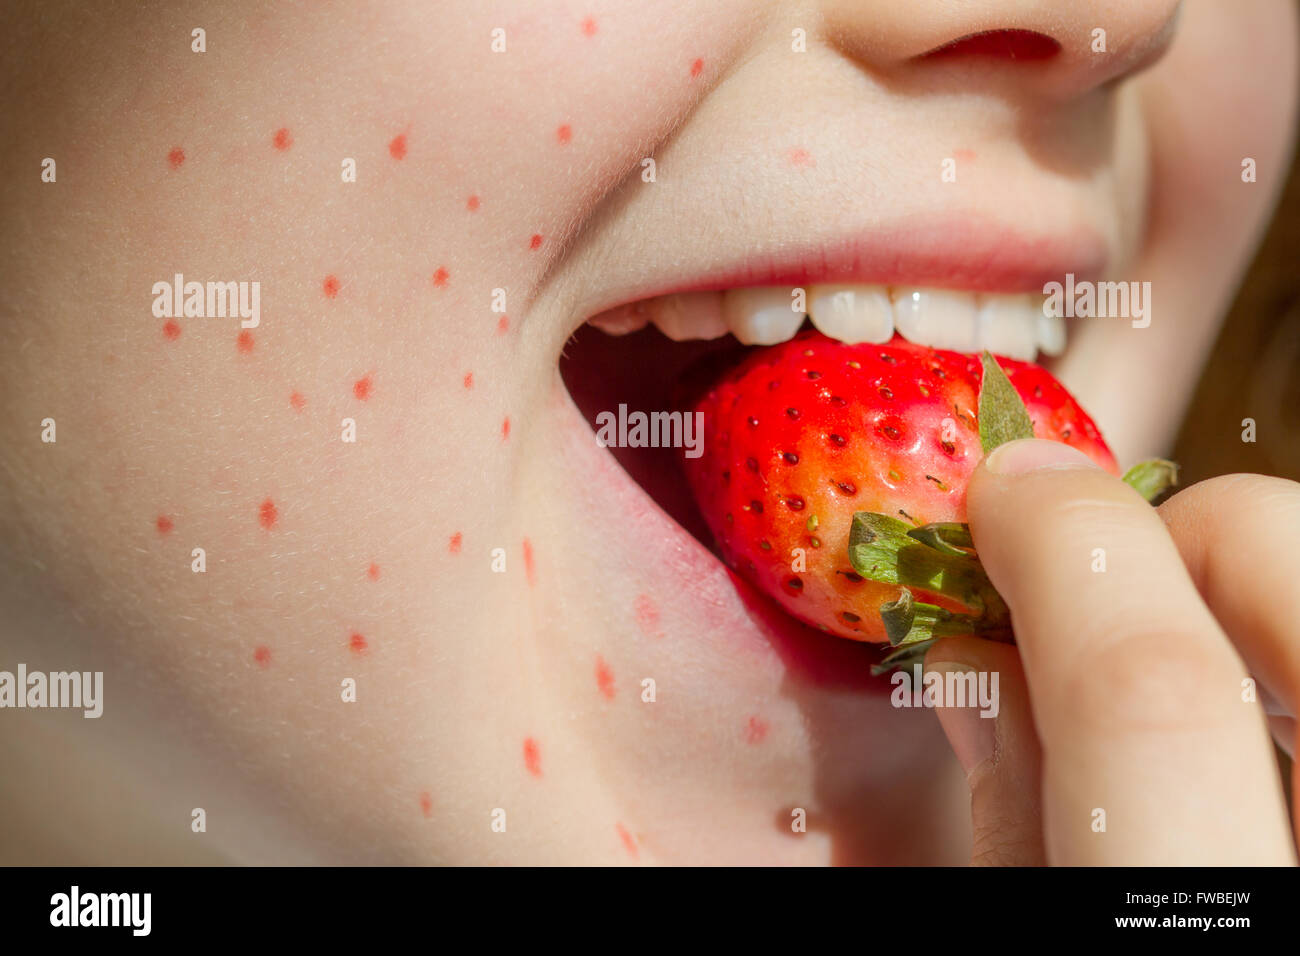 Allergie alimentaire fraise et abstract allergique sur le visage de la fille libre Banque D'Images